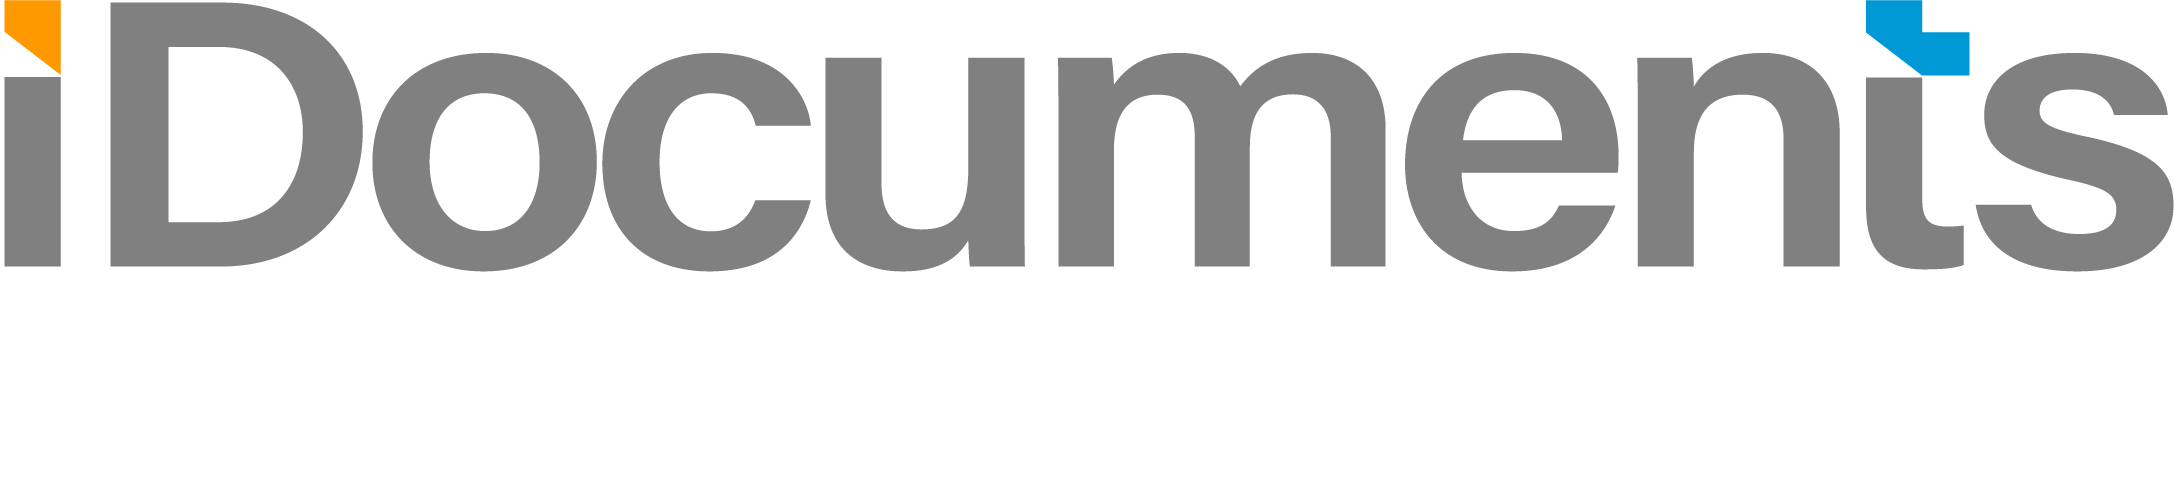 iDocuments AP/AR Automation